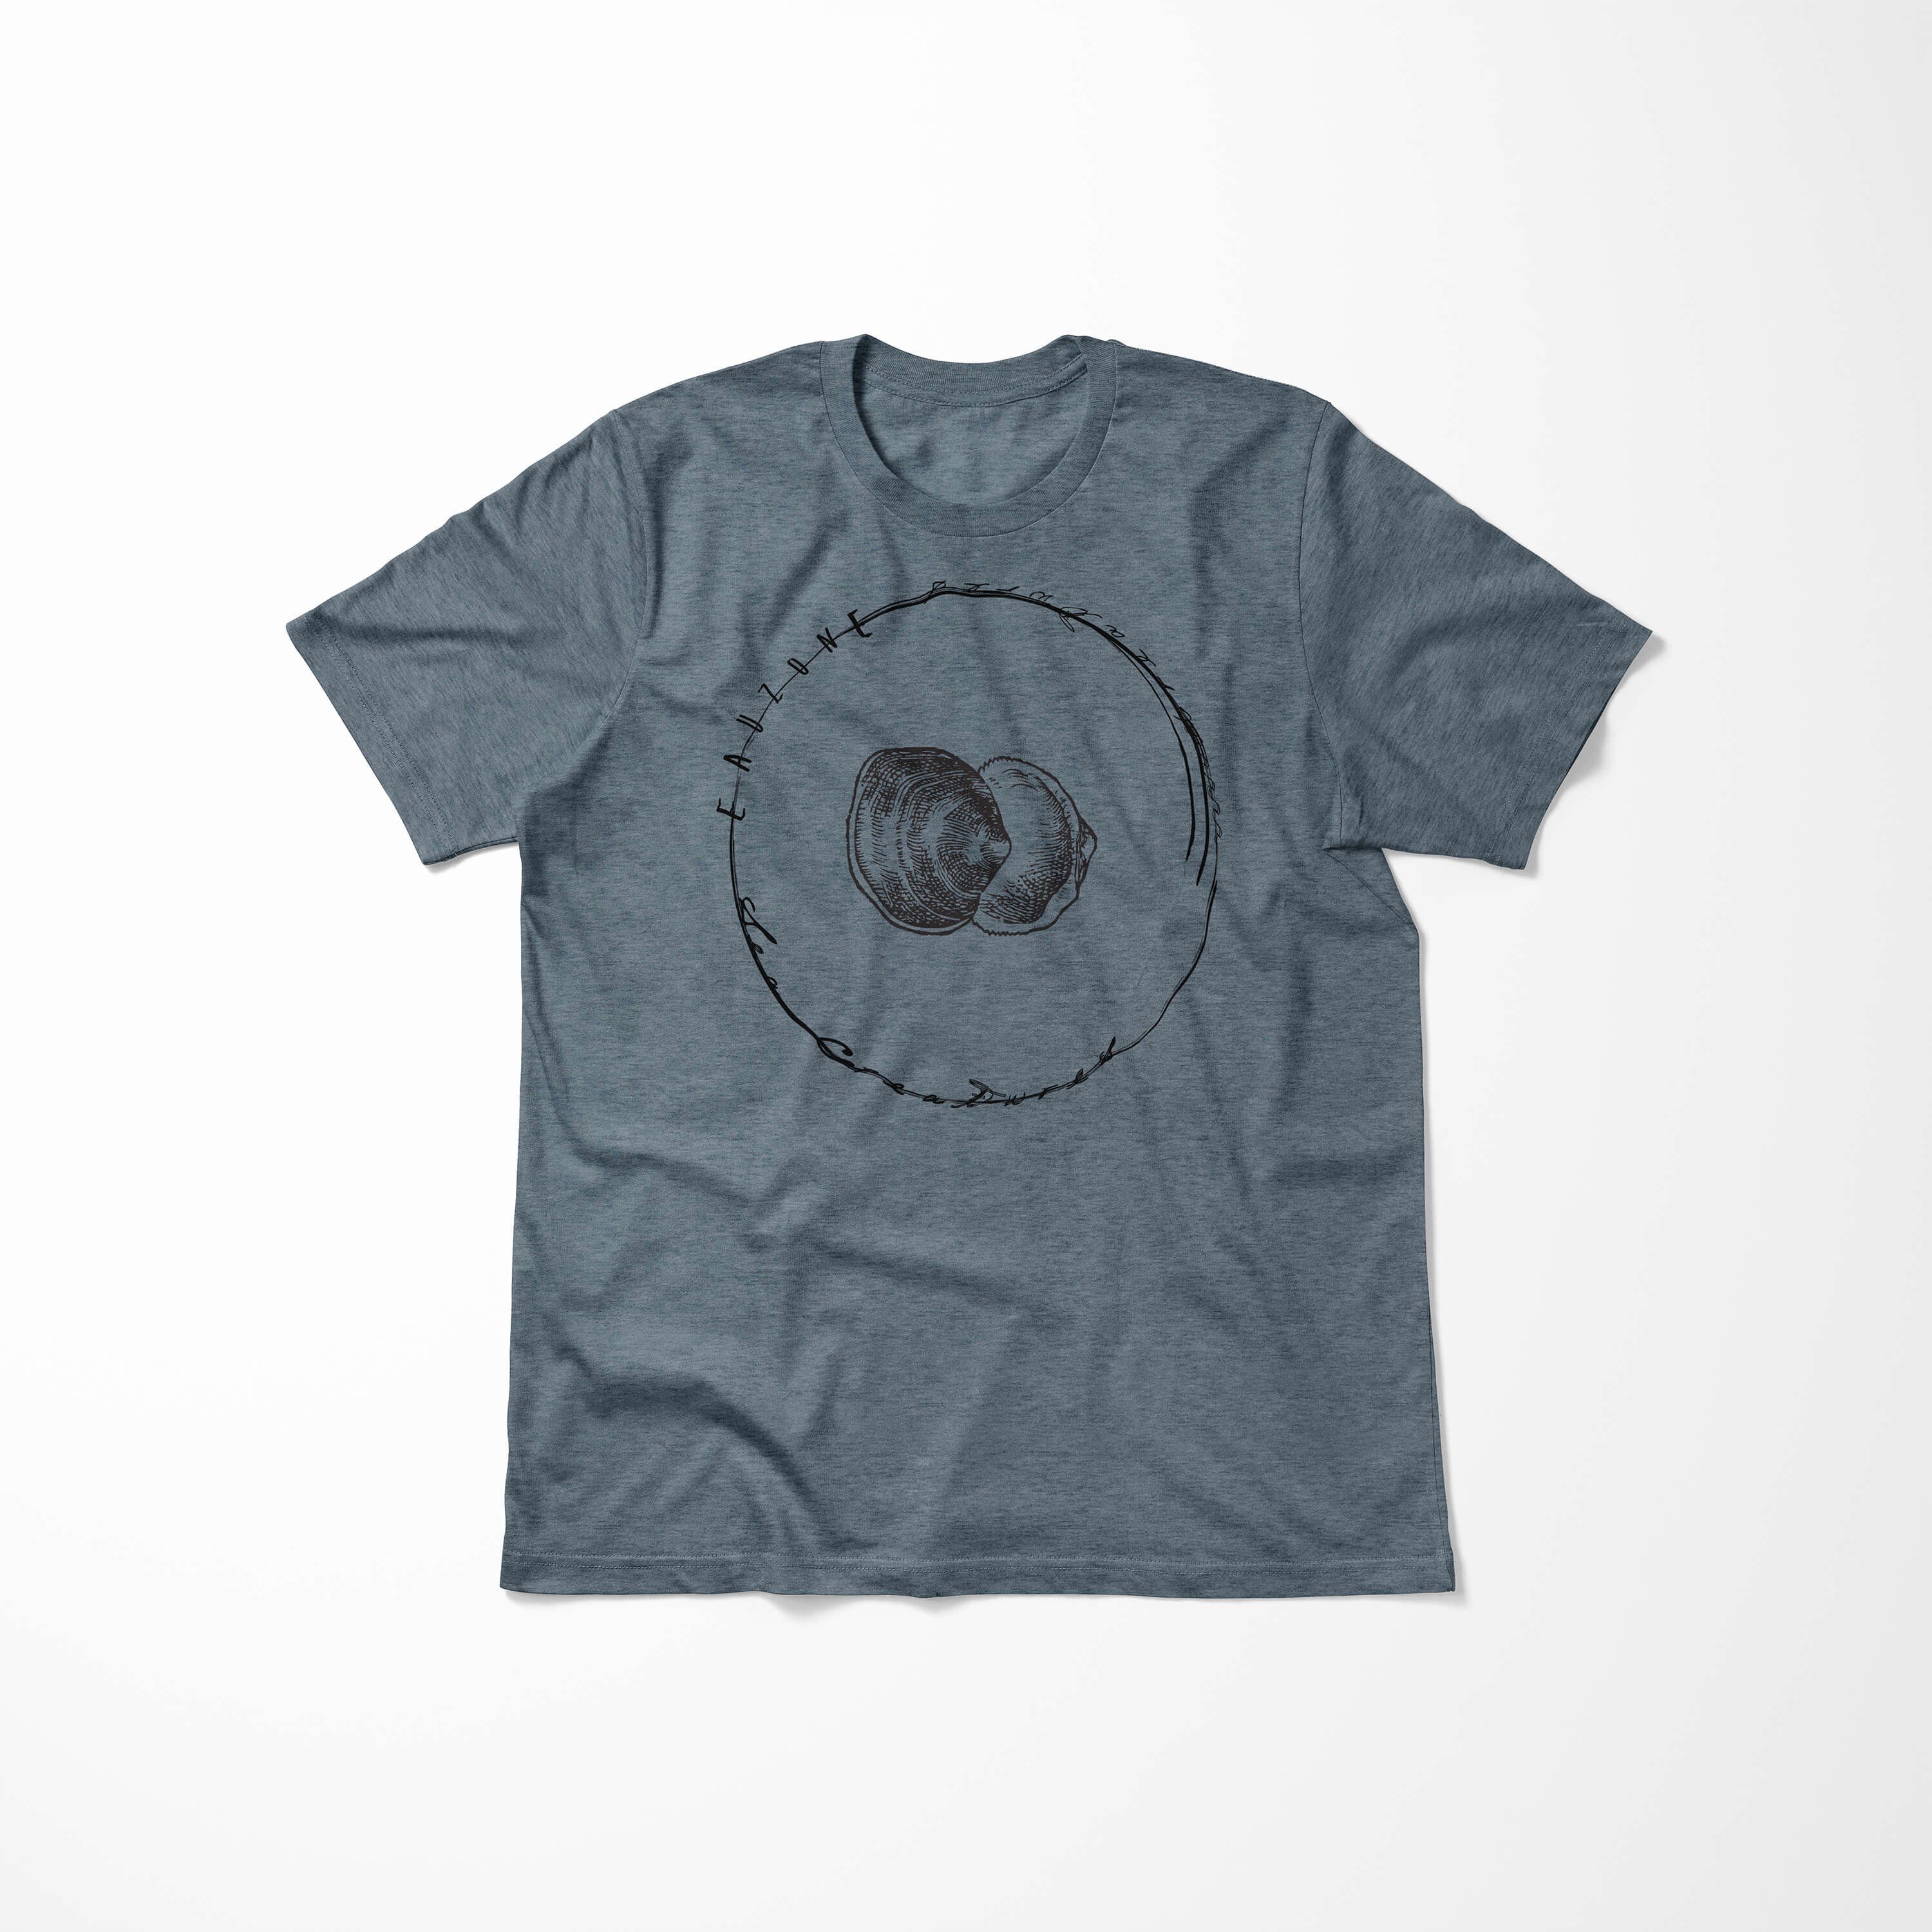 Sinus Creatures, feine Sea Struktur sportlicher Tiefsee Schnitt T-Shirt Art 010 Sea Fische T-Shirt / - Serie: Indigo und